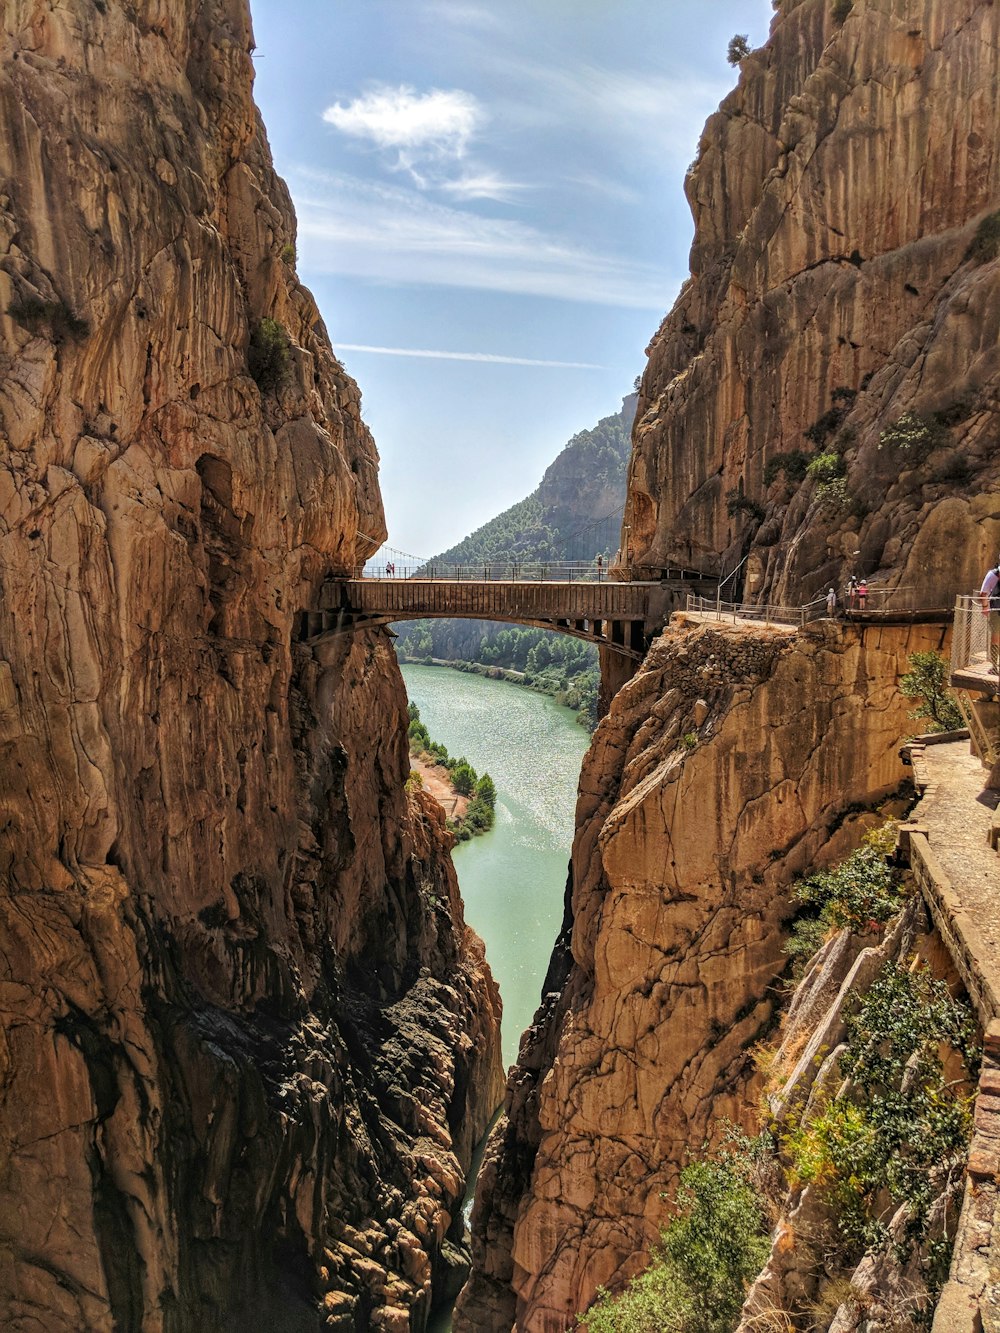 a bridge over a river between cliffs